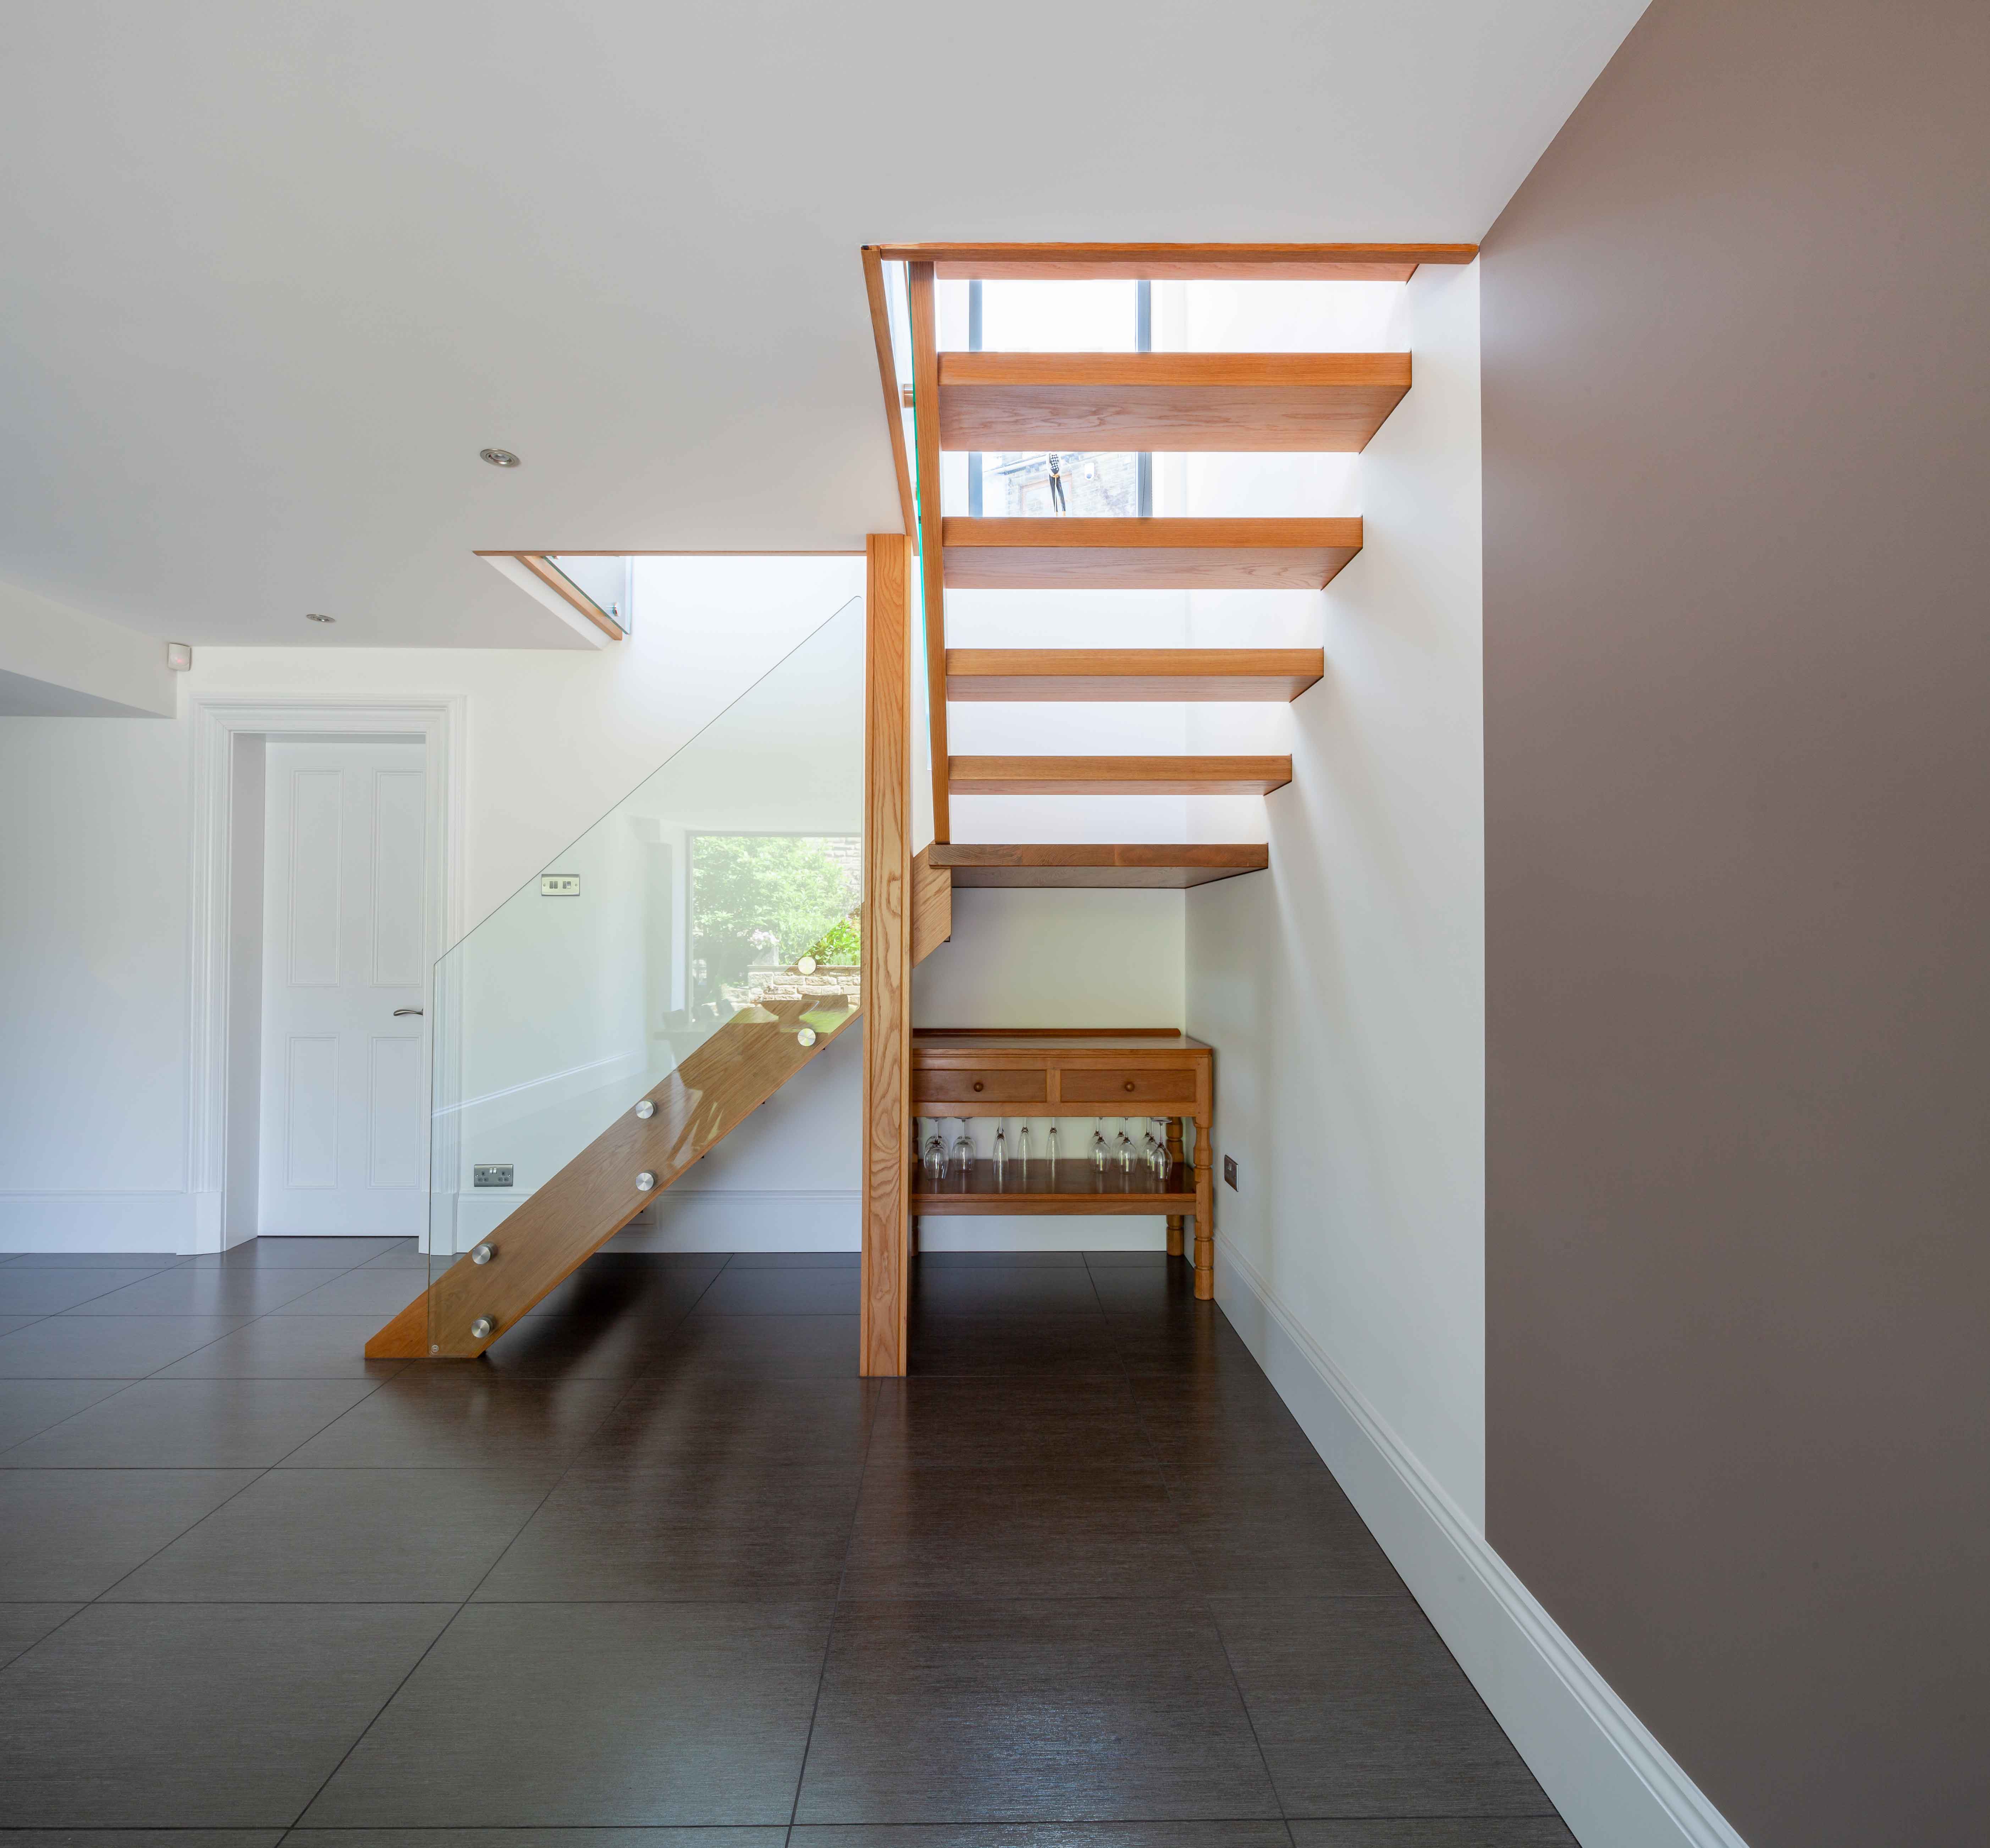 Abode Builders – A cedar clad modern extension